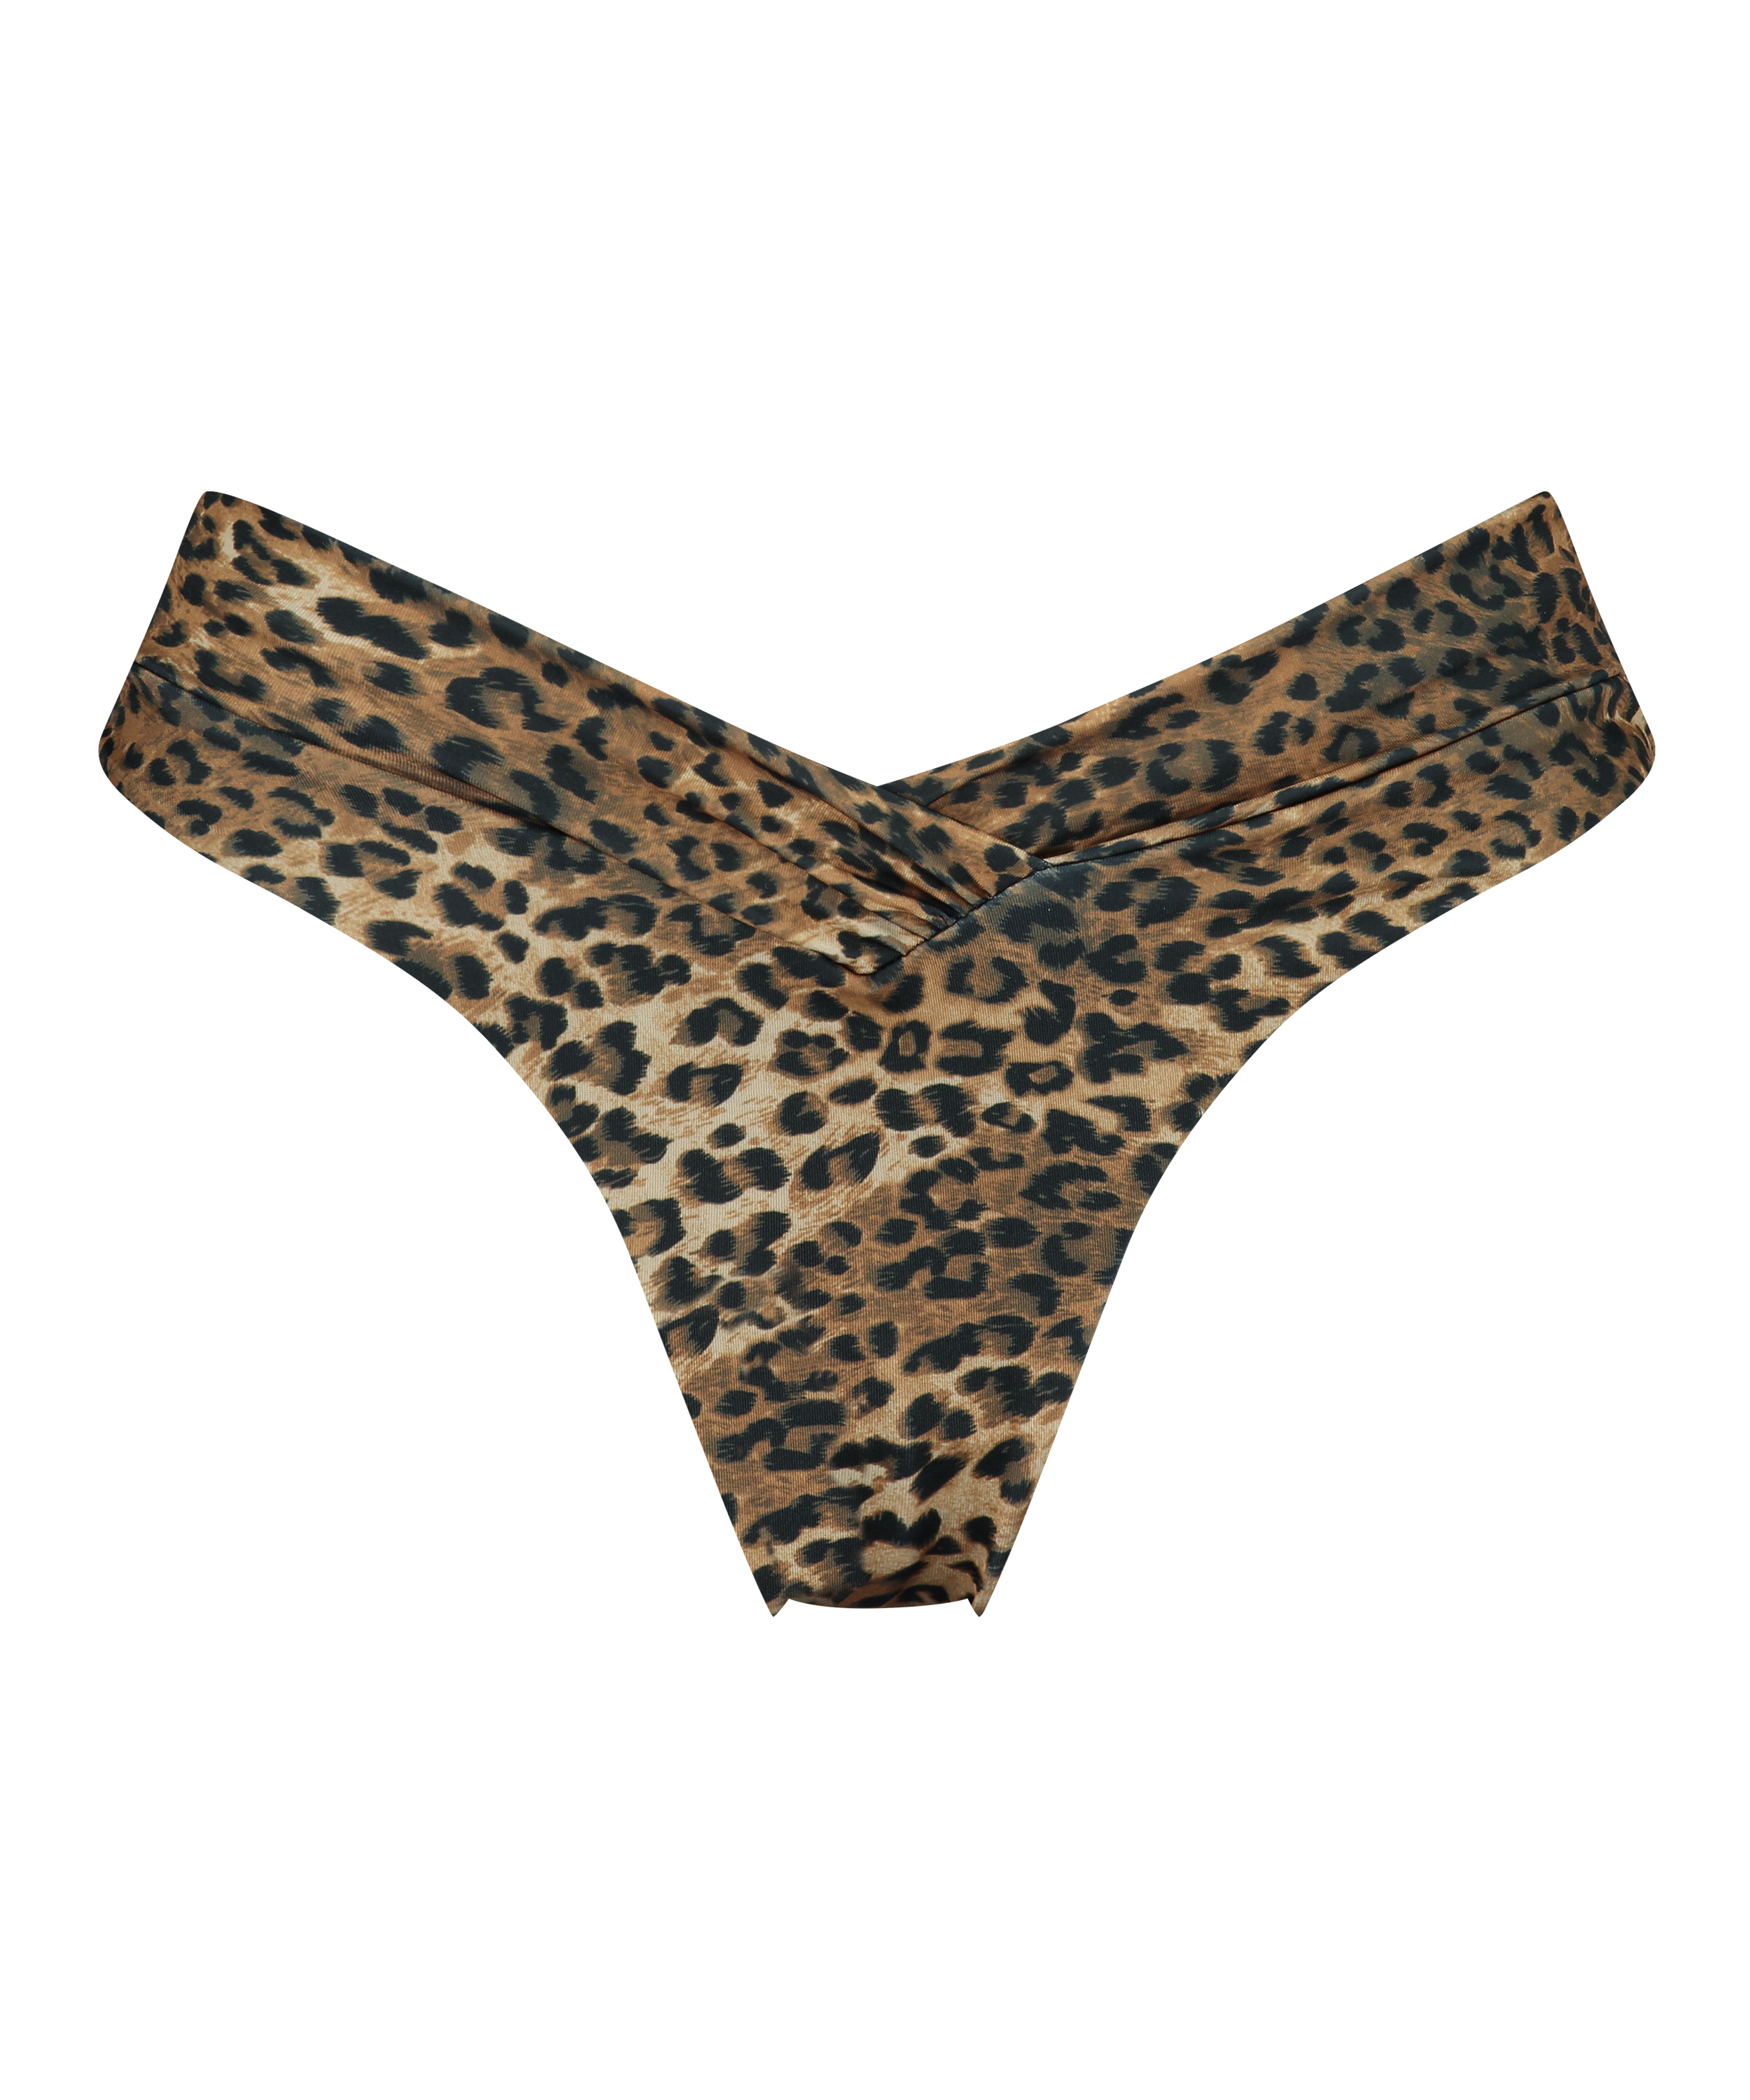 Hoch ausgeschnittenes Bikinihöschen Leopard, Braun, main